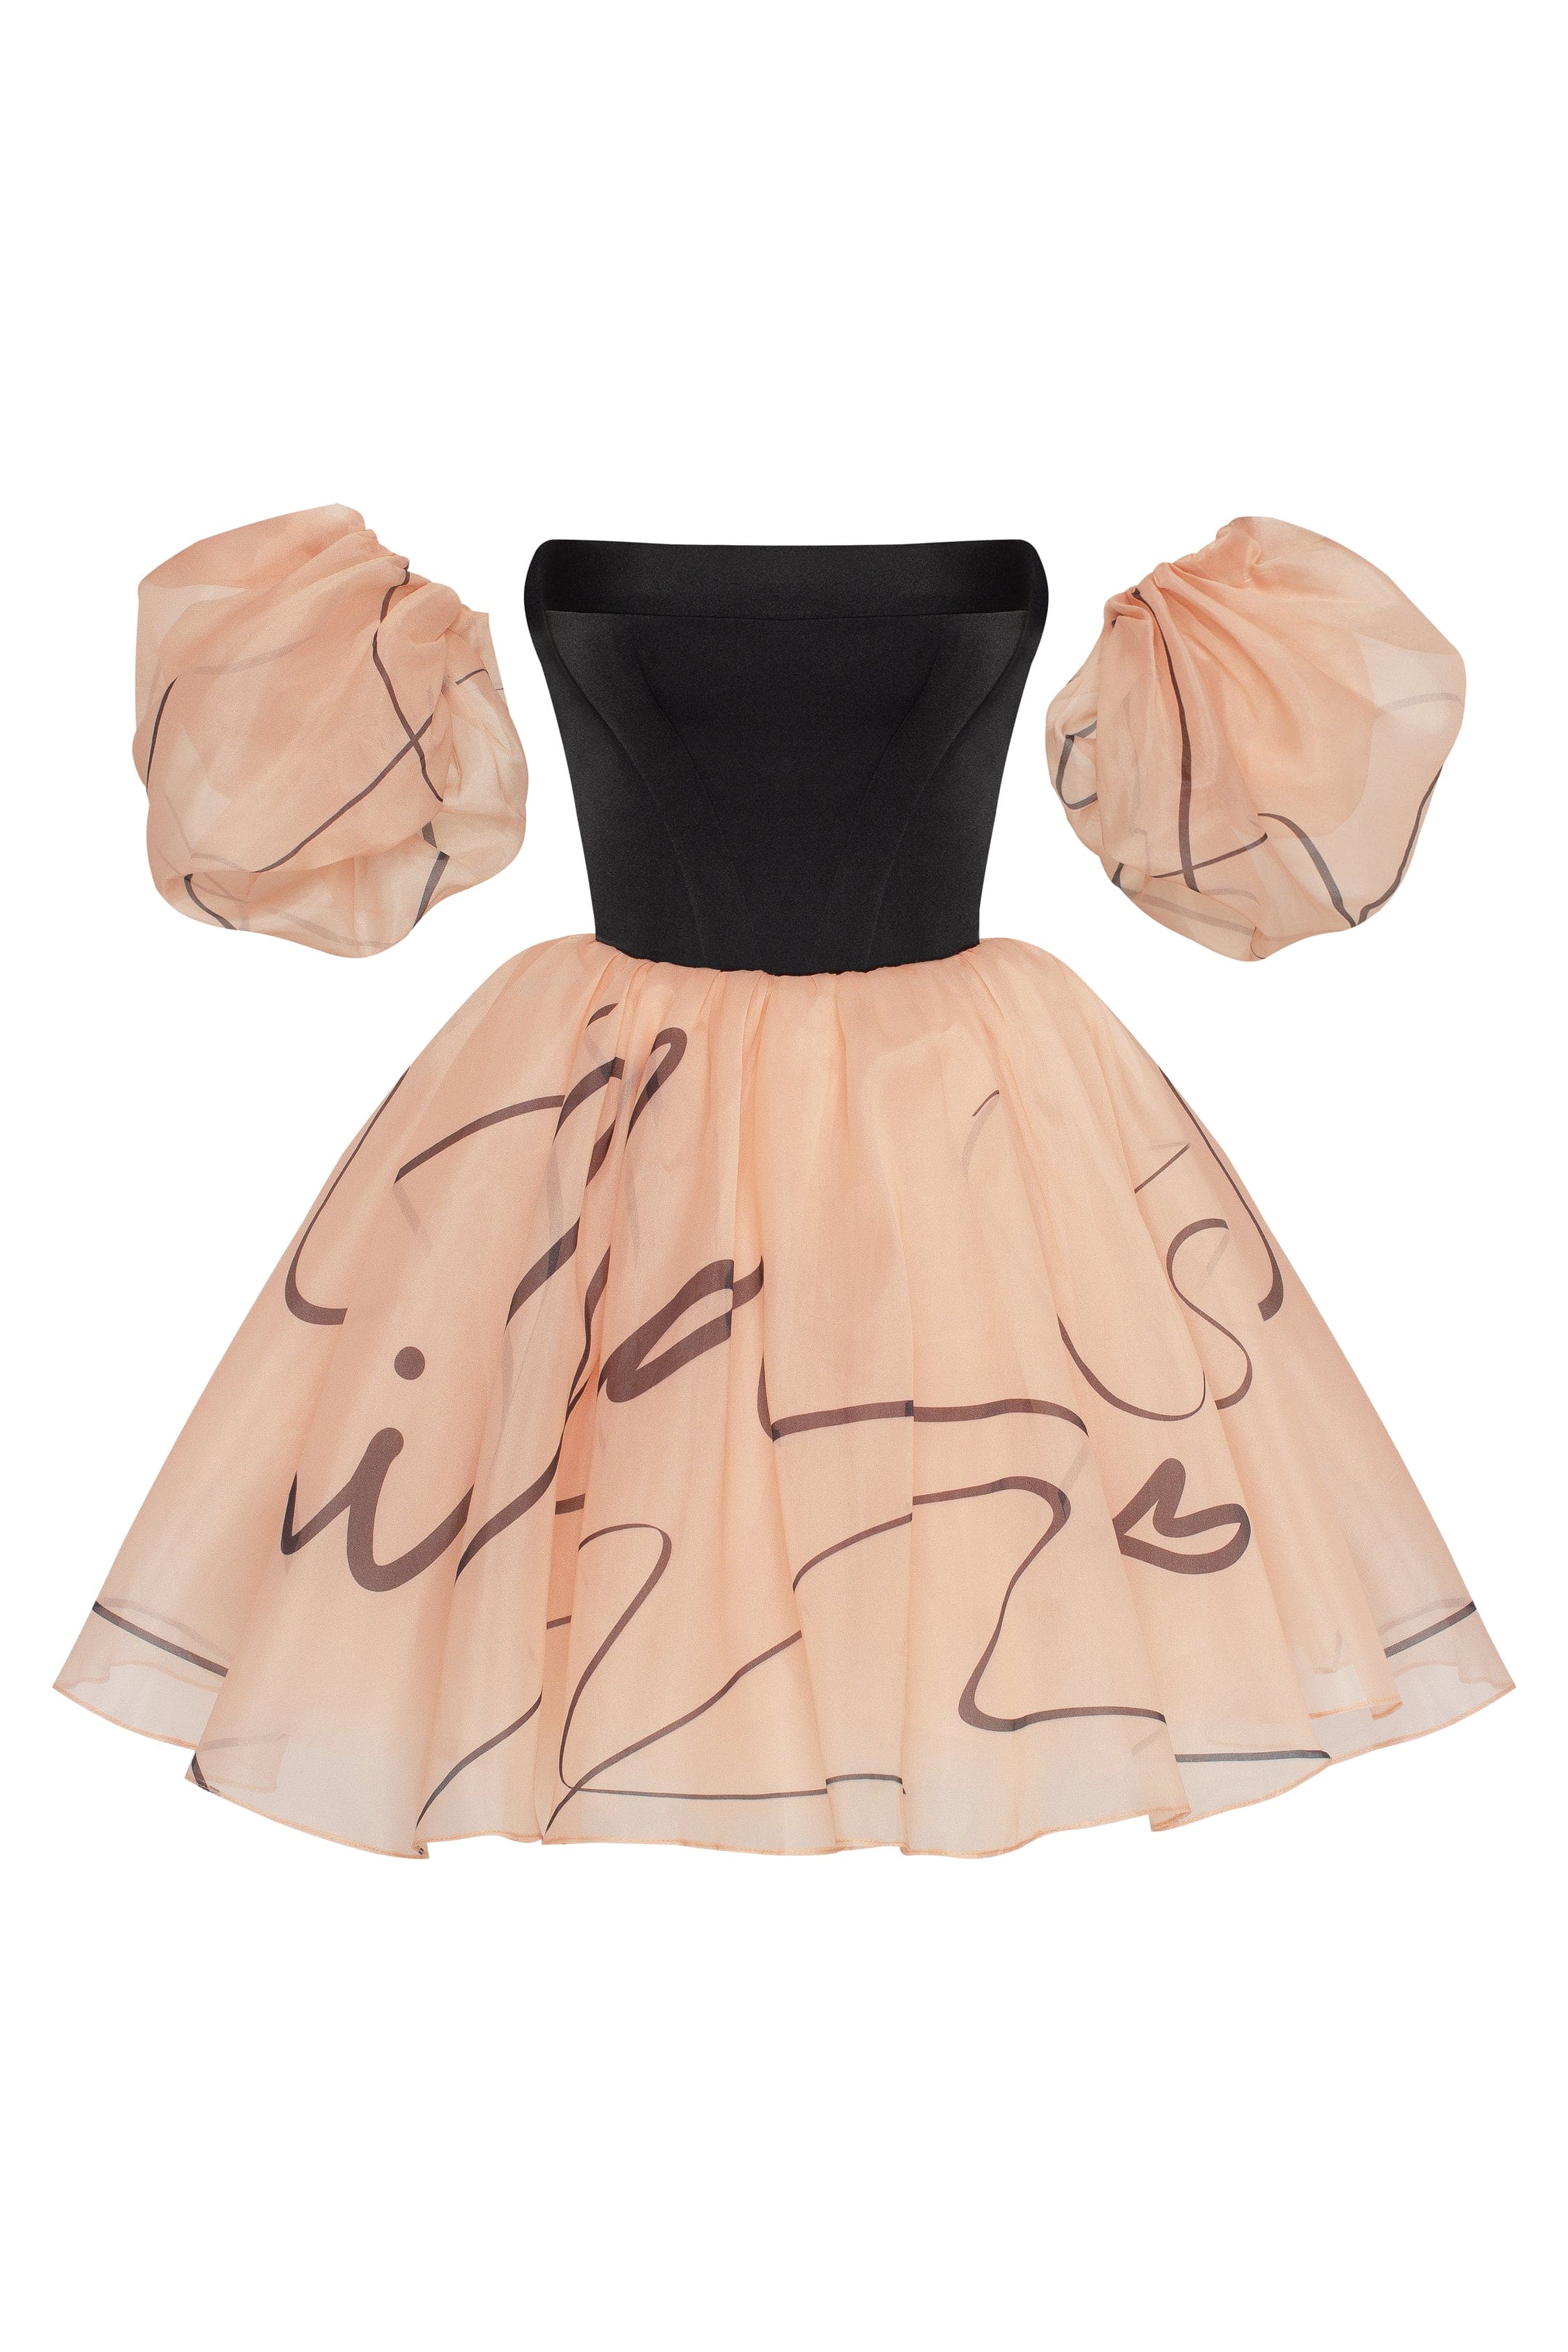 Puffy mini dress with Milla's signature, Xo Xo XS womens